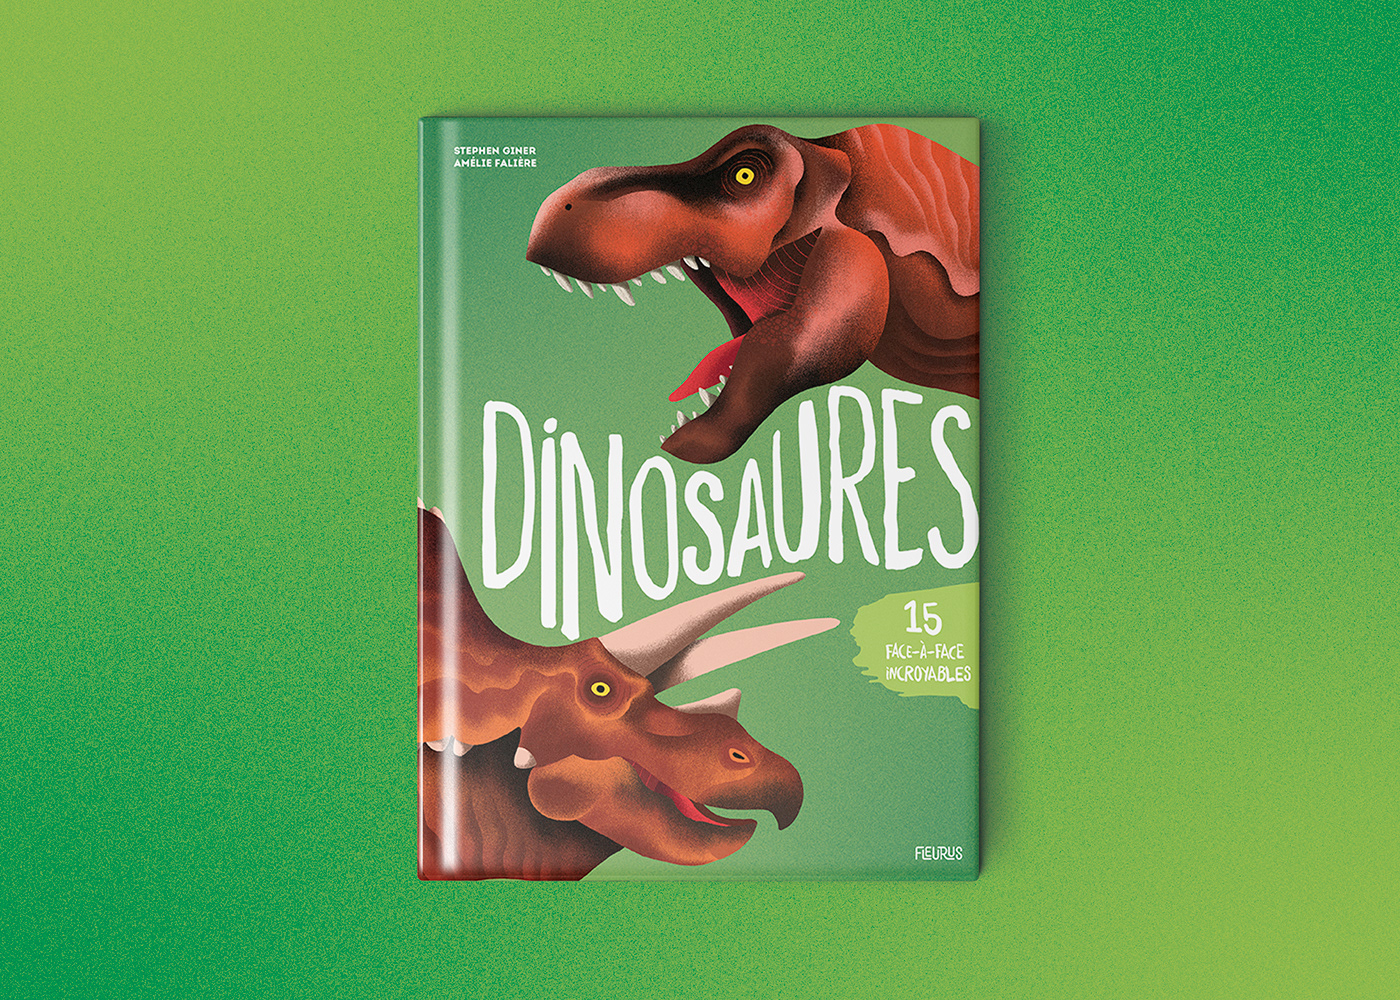 book cover couverture de livre dinosaures édition jeunesse graphic design  publishing  